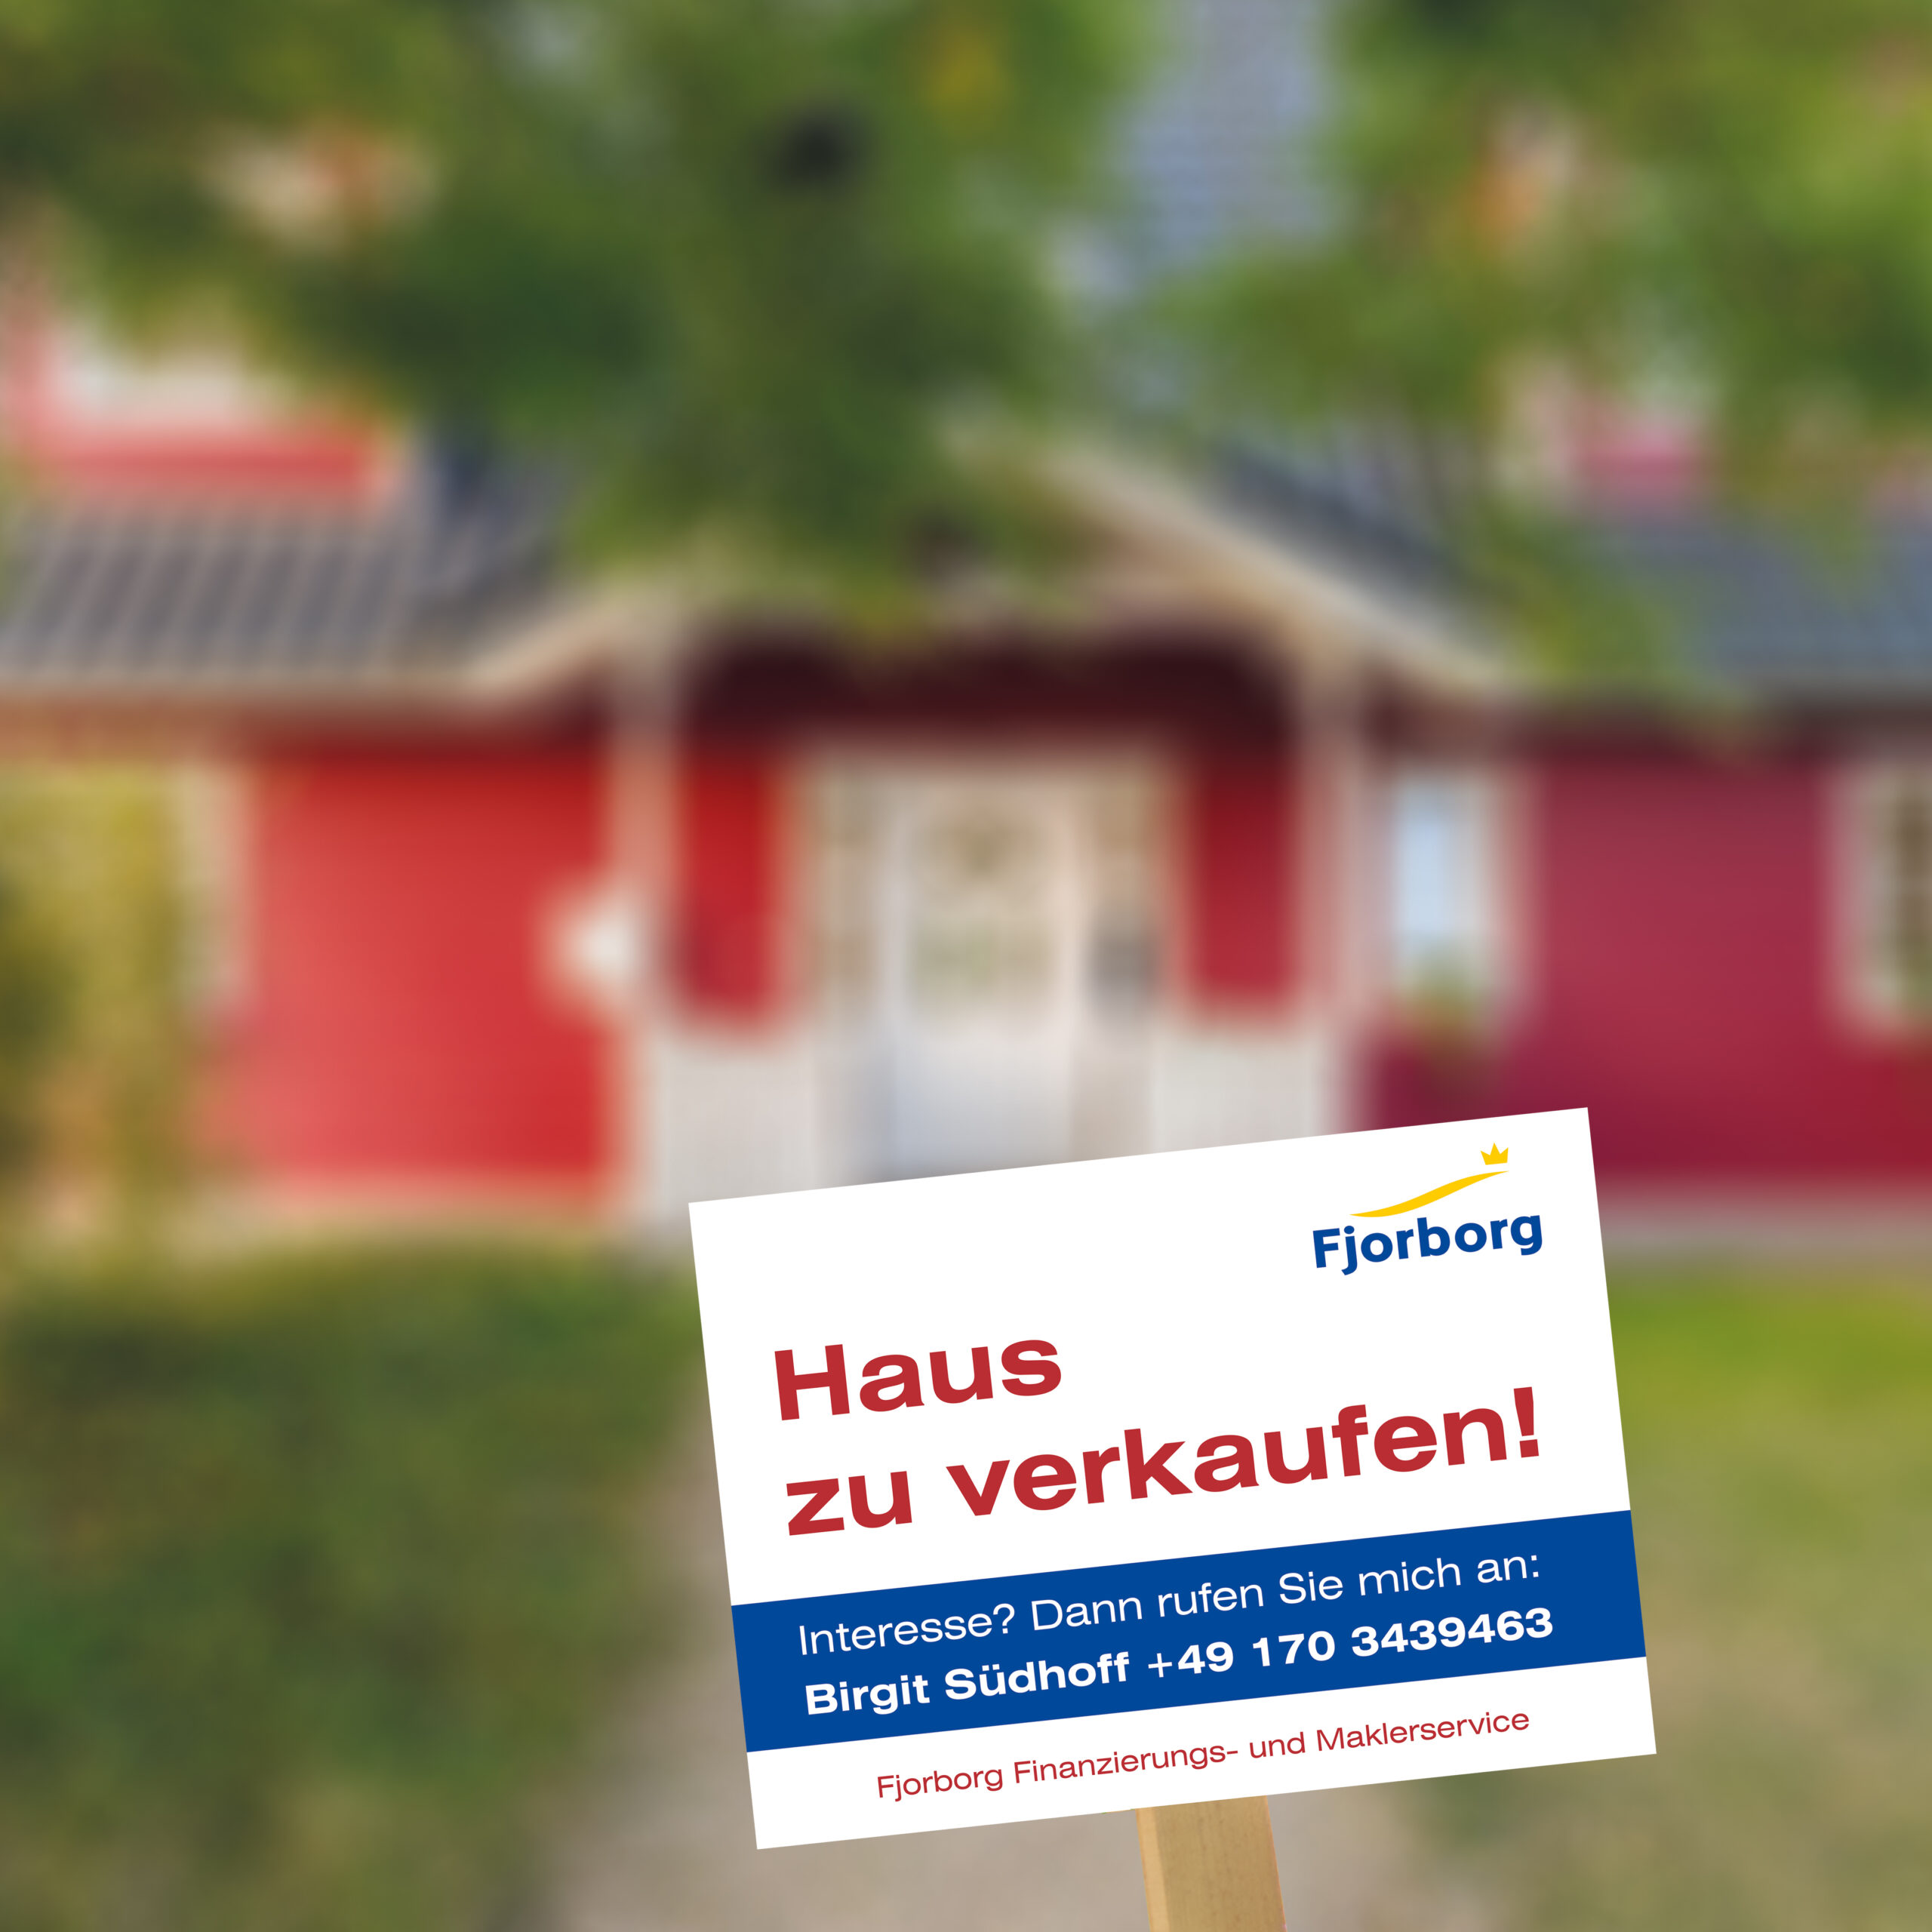 Fjorborg Häuser - News - Immobilienverkauf & Finanzierungsservice aus einer Hand